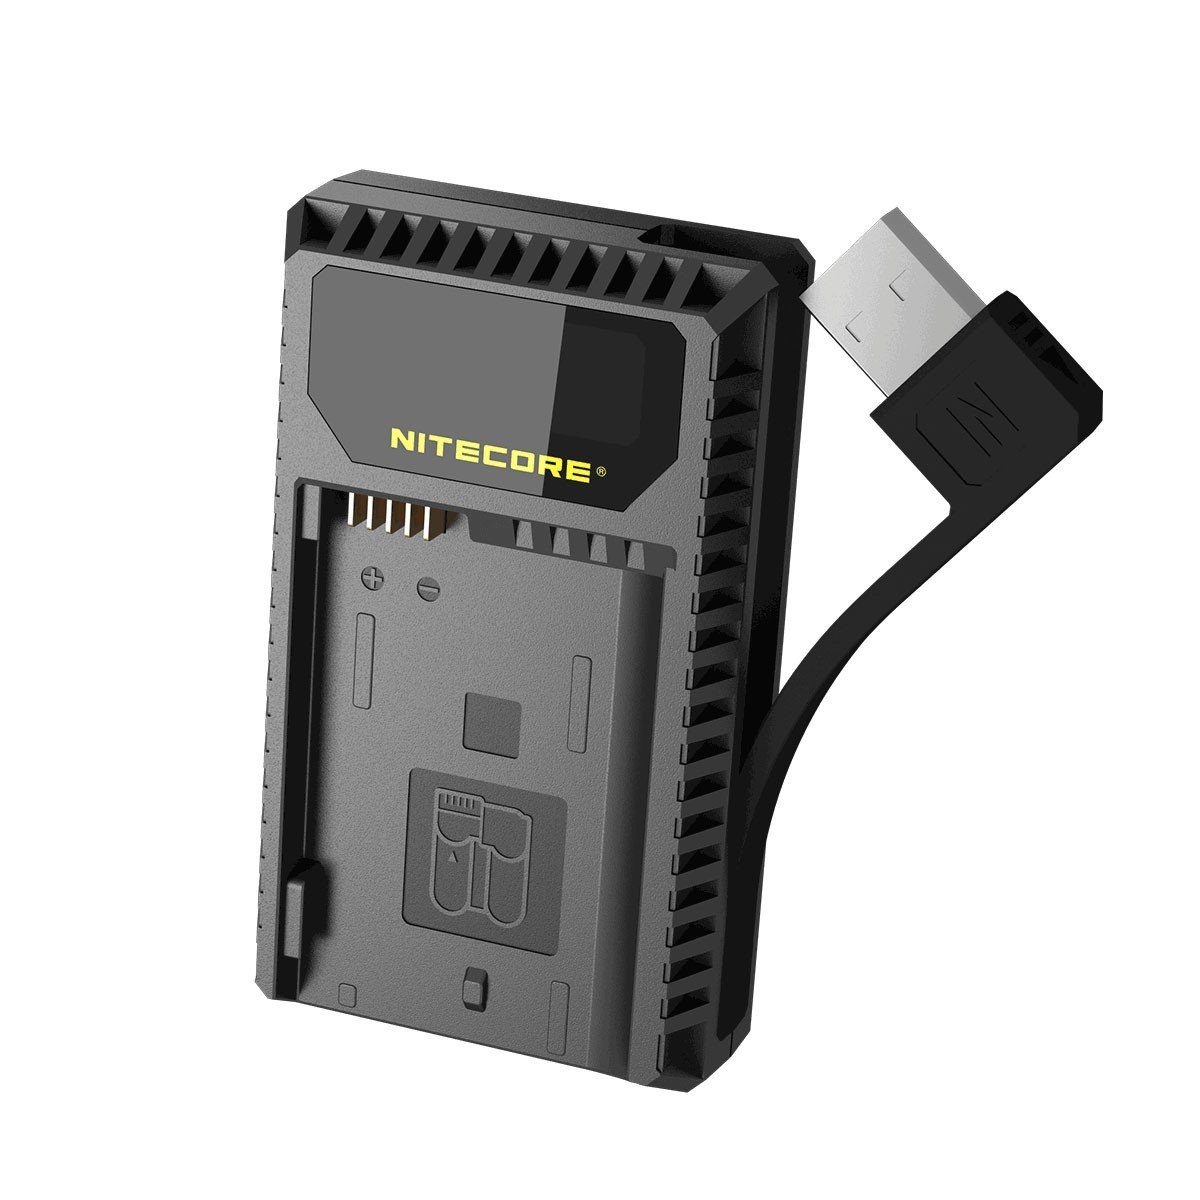 UNK1 Nitecore Nikon USB-Ladegerät Akku-Ladestation für Nitecore Cameras